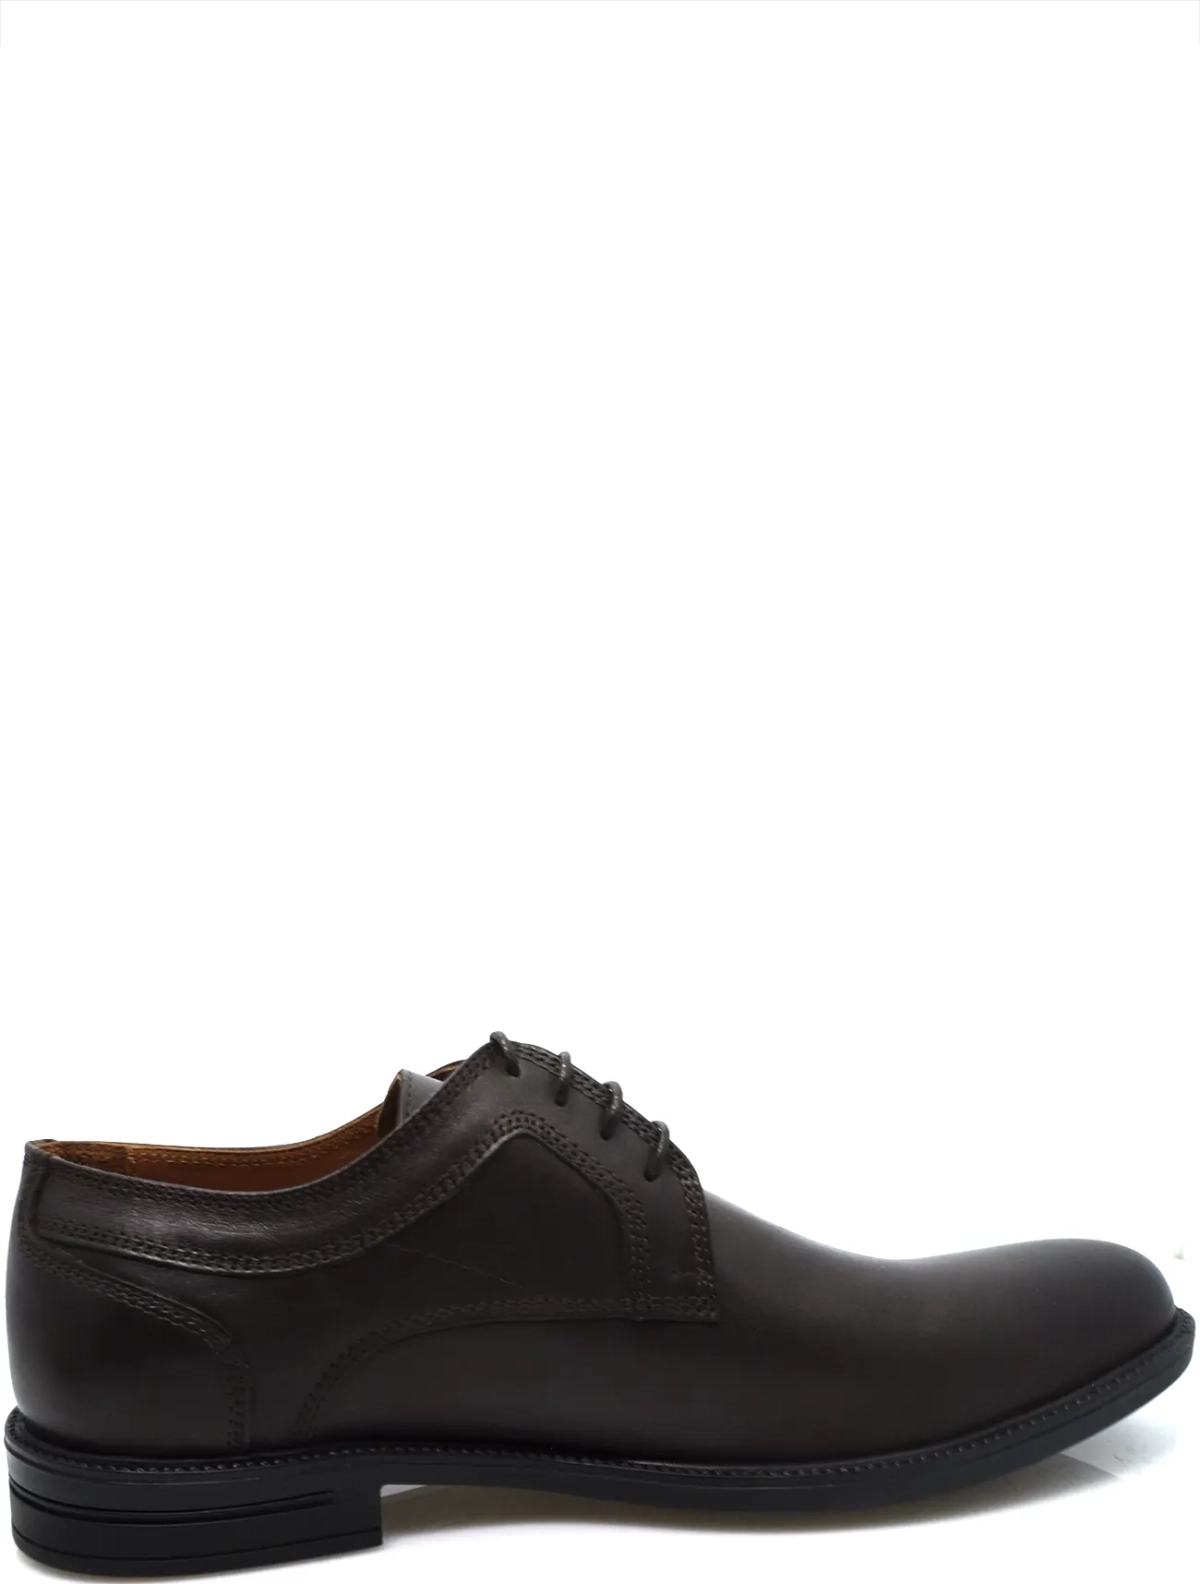 EDERRO 205-1928-118 мужские туфли